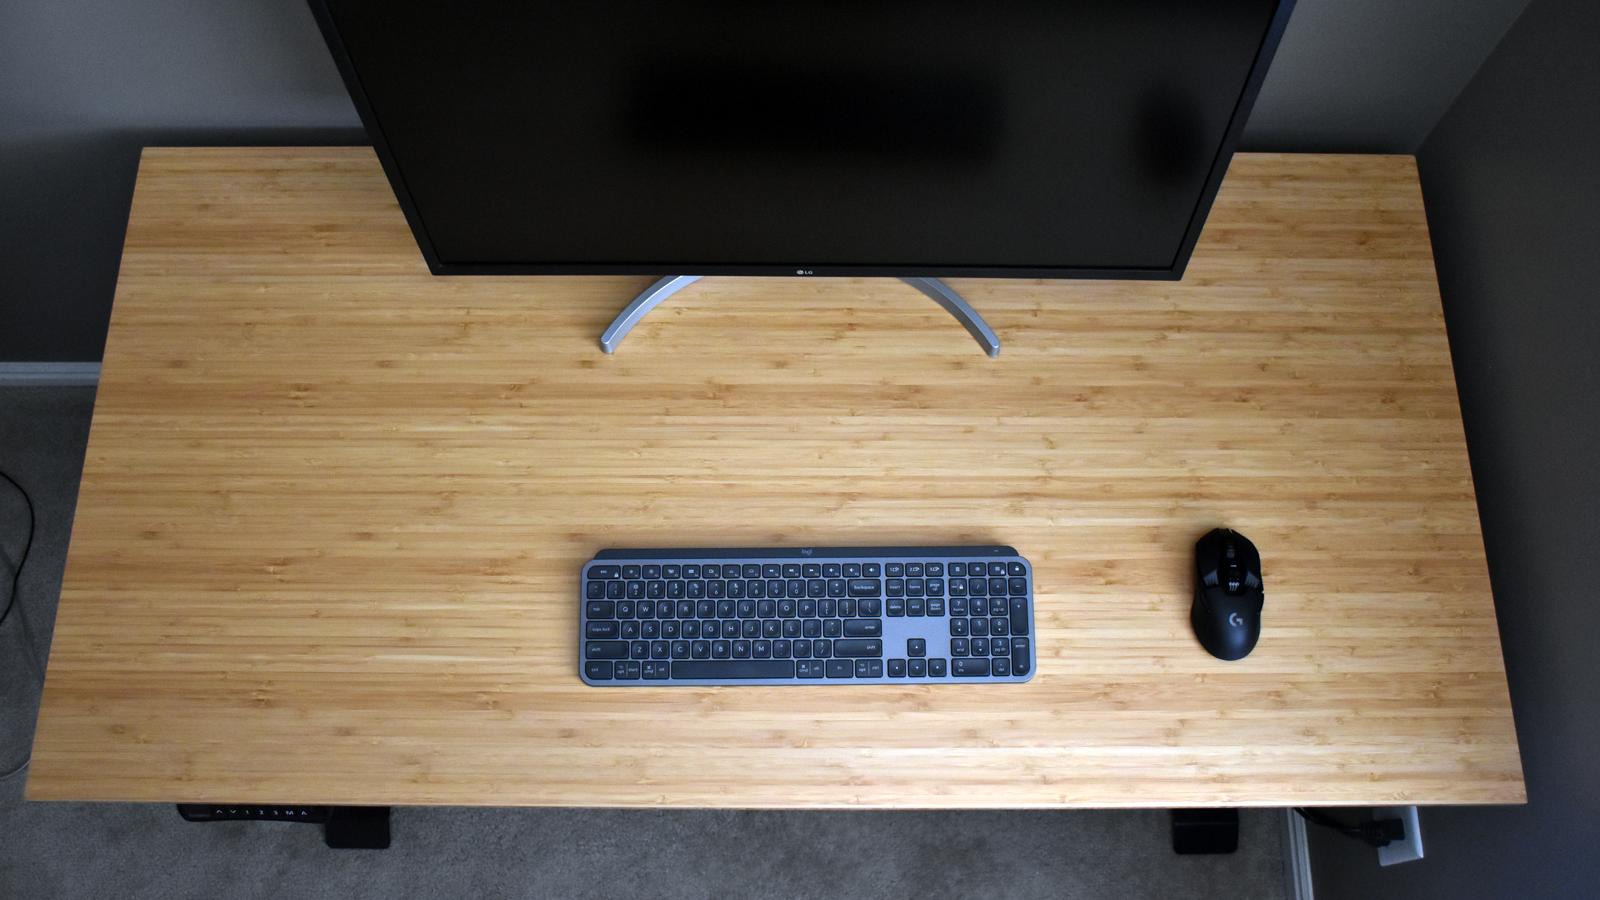 Chế độ xem từ trên xuống của bàn làm việc chỉ với bàn phím, màn hình và chuột trên đó